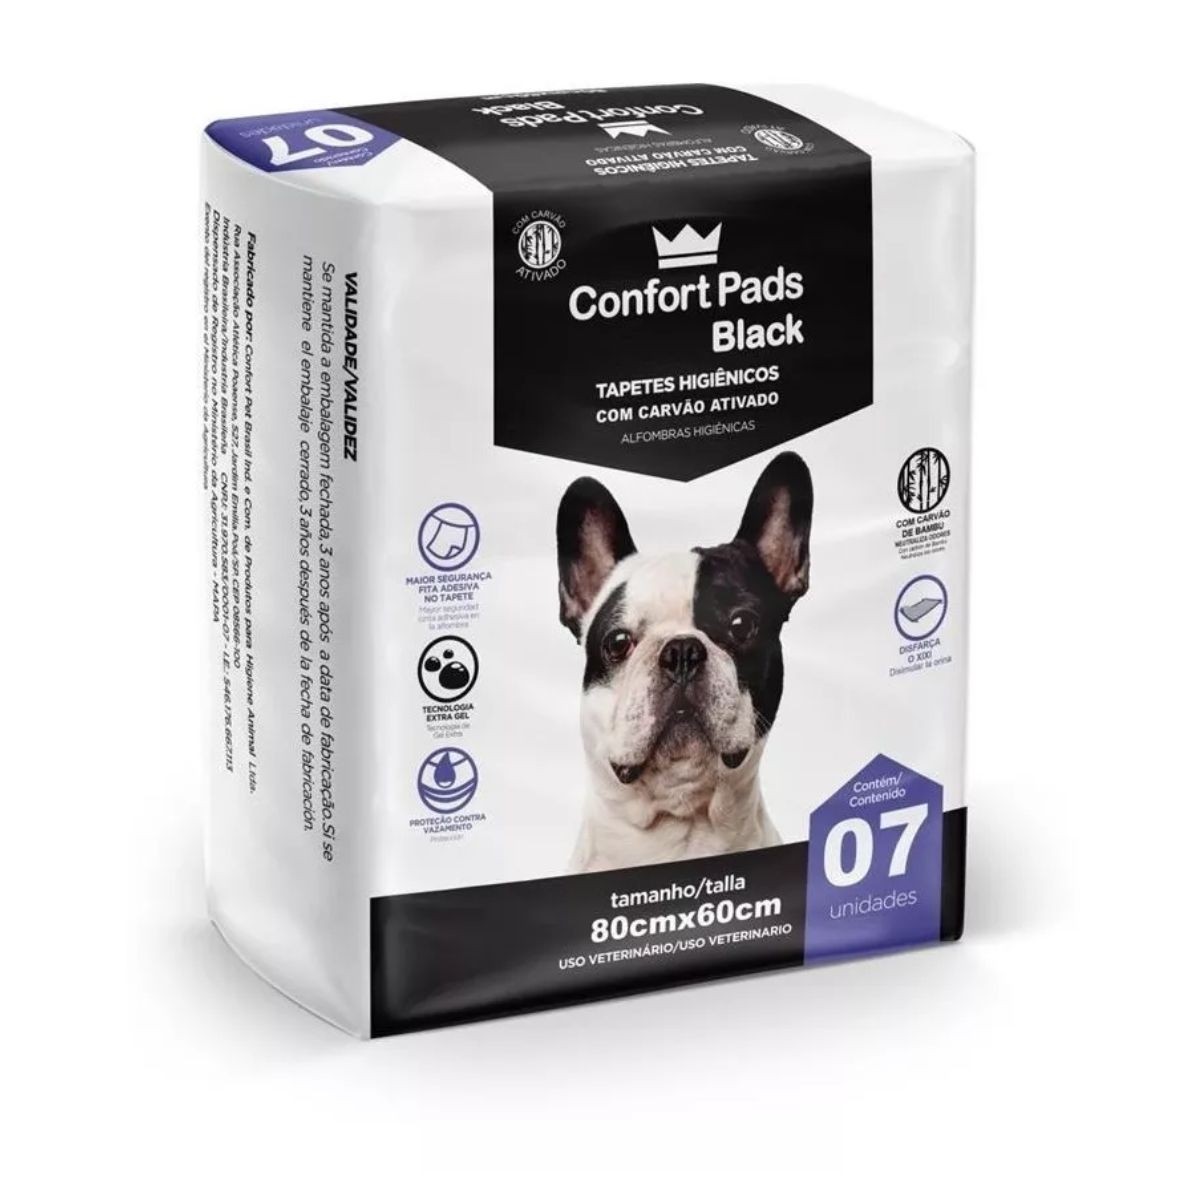 Tapete Higiênico Confort Pads Black (Anti Odor) 80x60cm 07 Unidades P/ Pets - Confort Pet